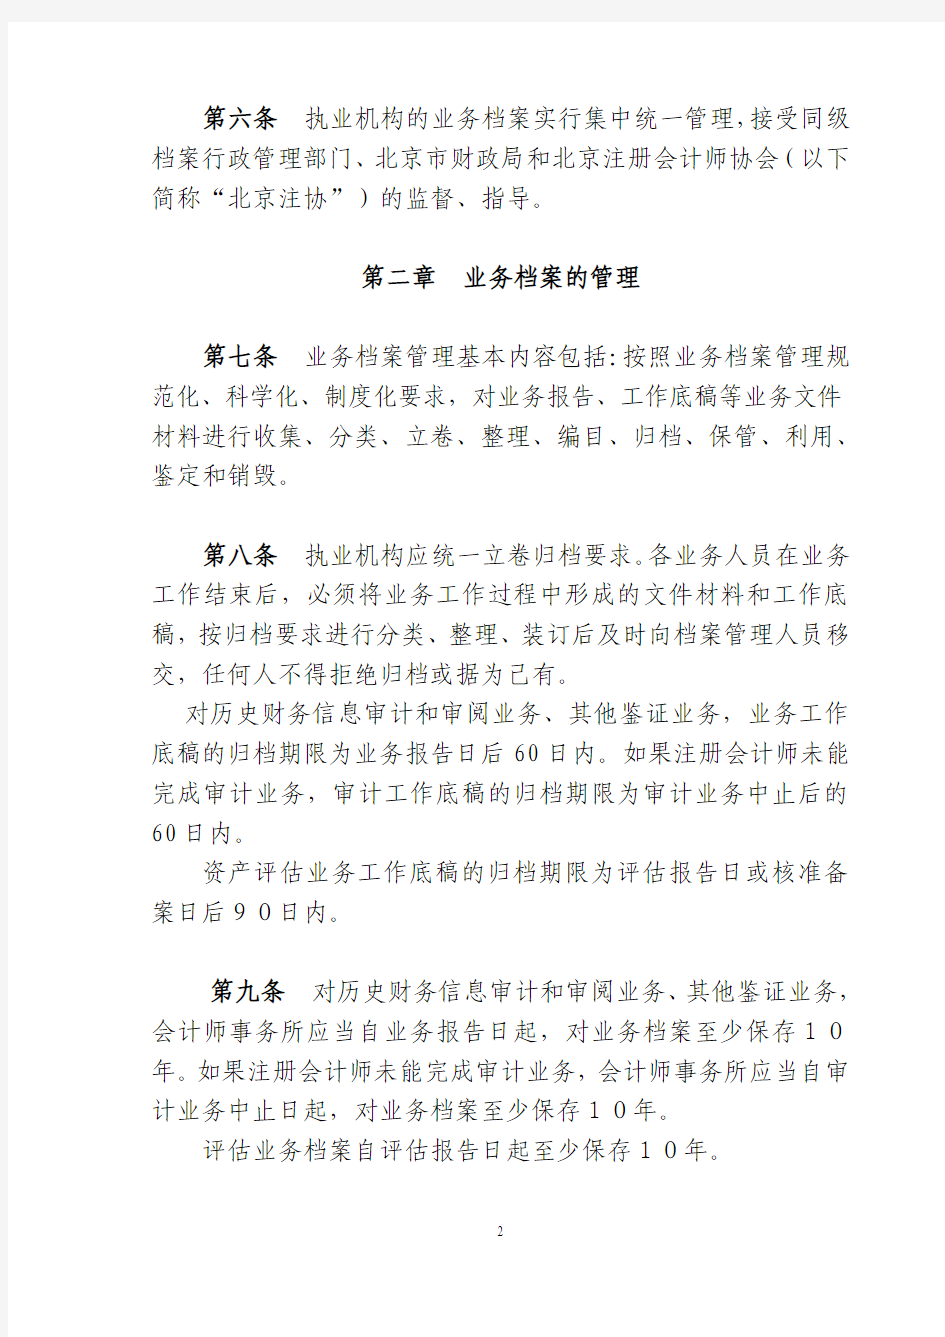 《北京市会计师事务所资产评估